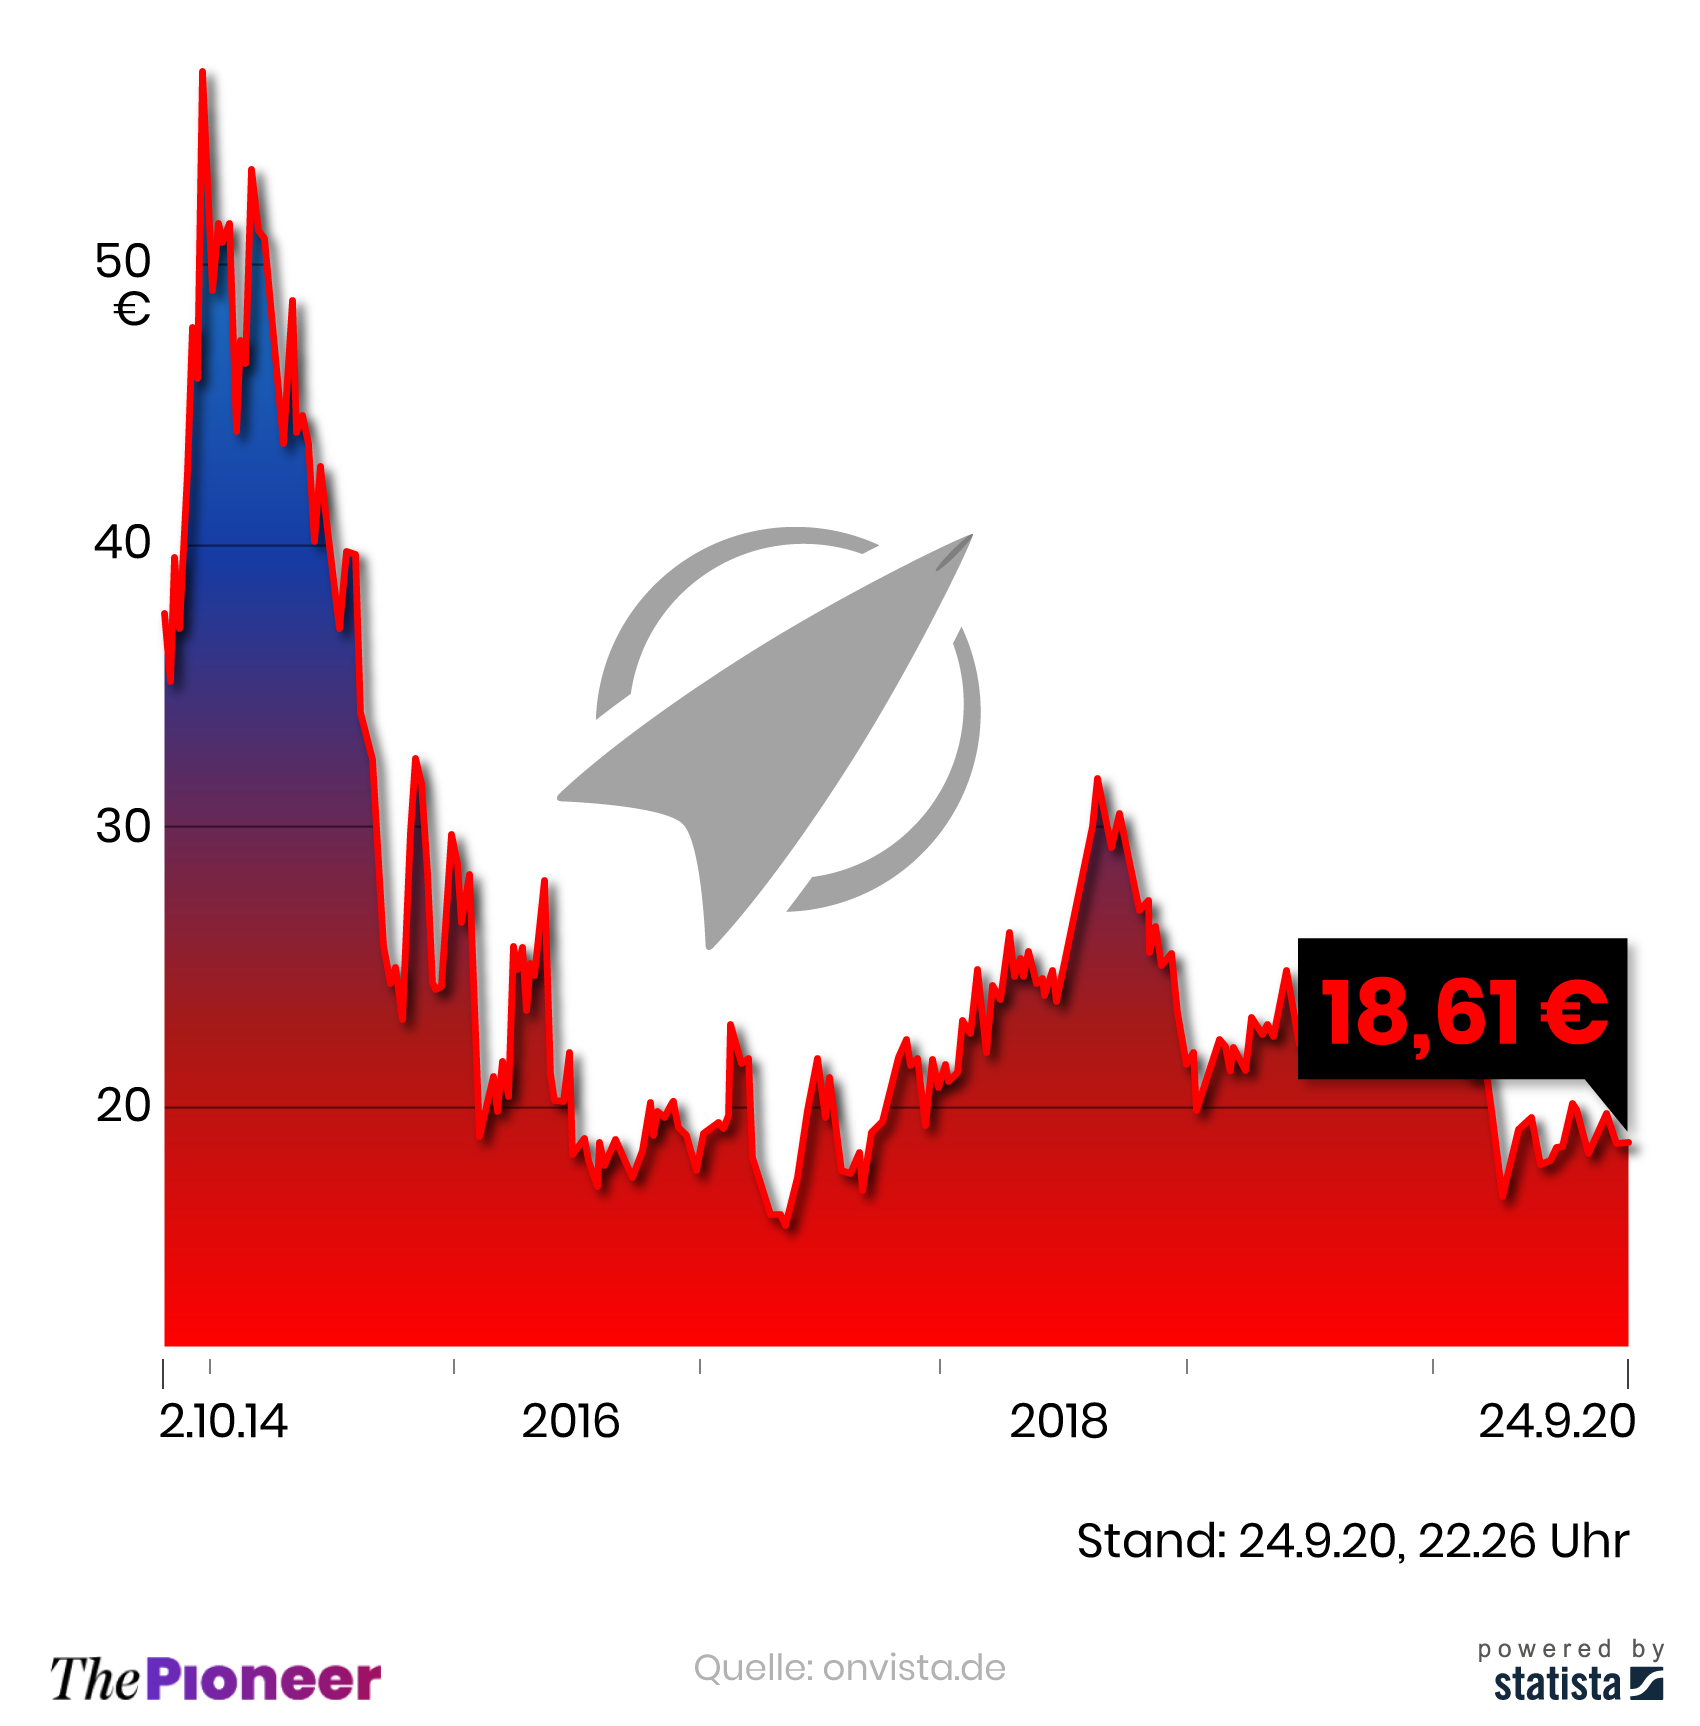 Verlauf der Rocket-Internet-Aktie seit Börsengang am 2. Oktober 2014, in Euro